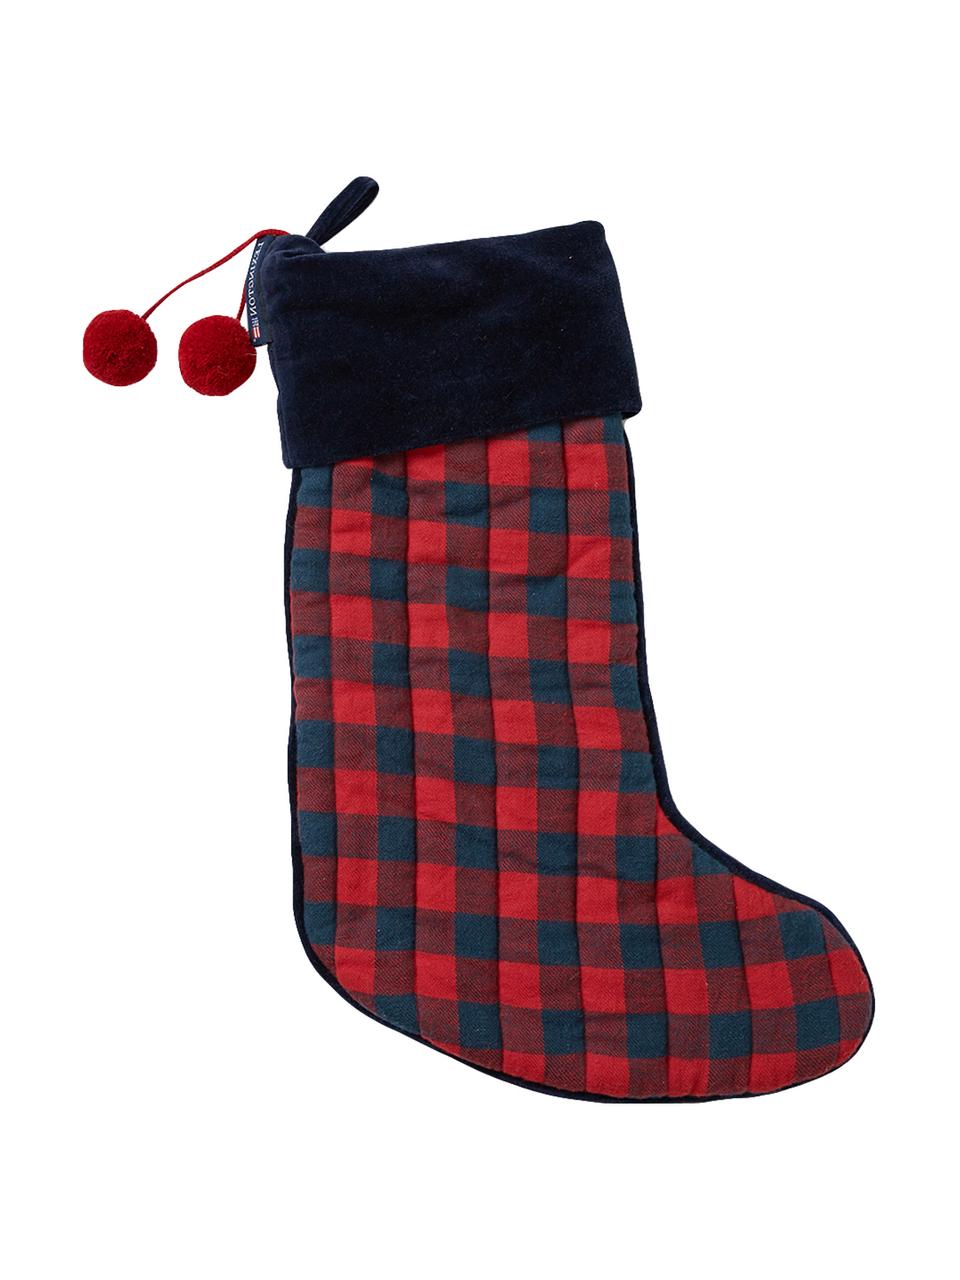 Vianočná pančucha Holiday, Bavlna, Tmavomodrá, červená, D 45 cm